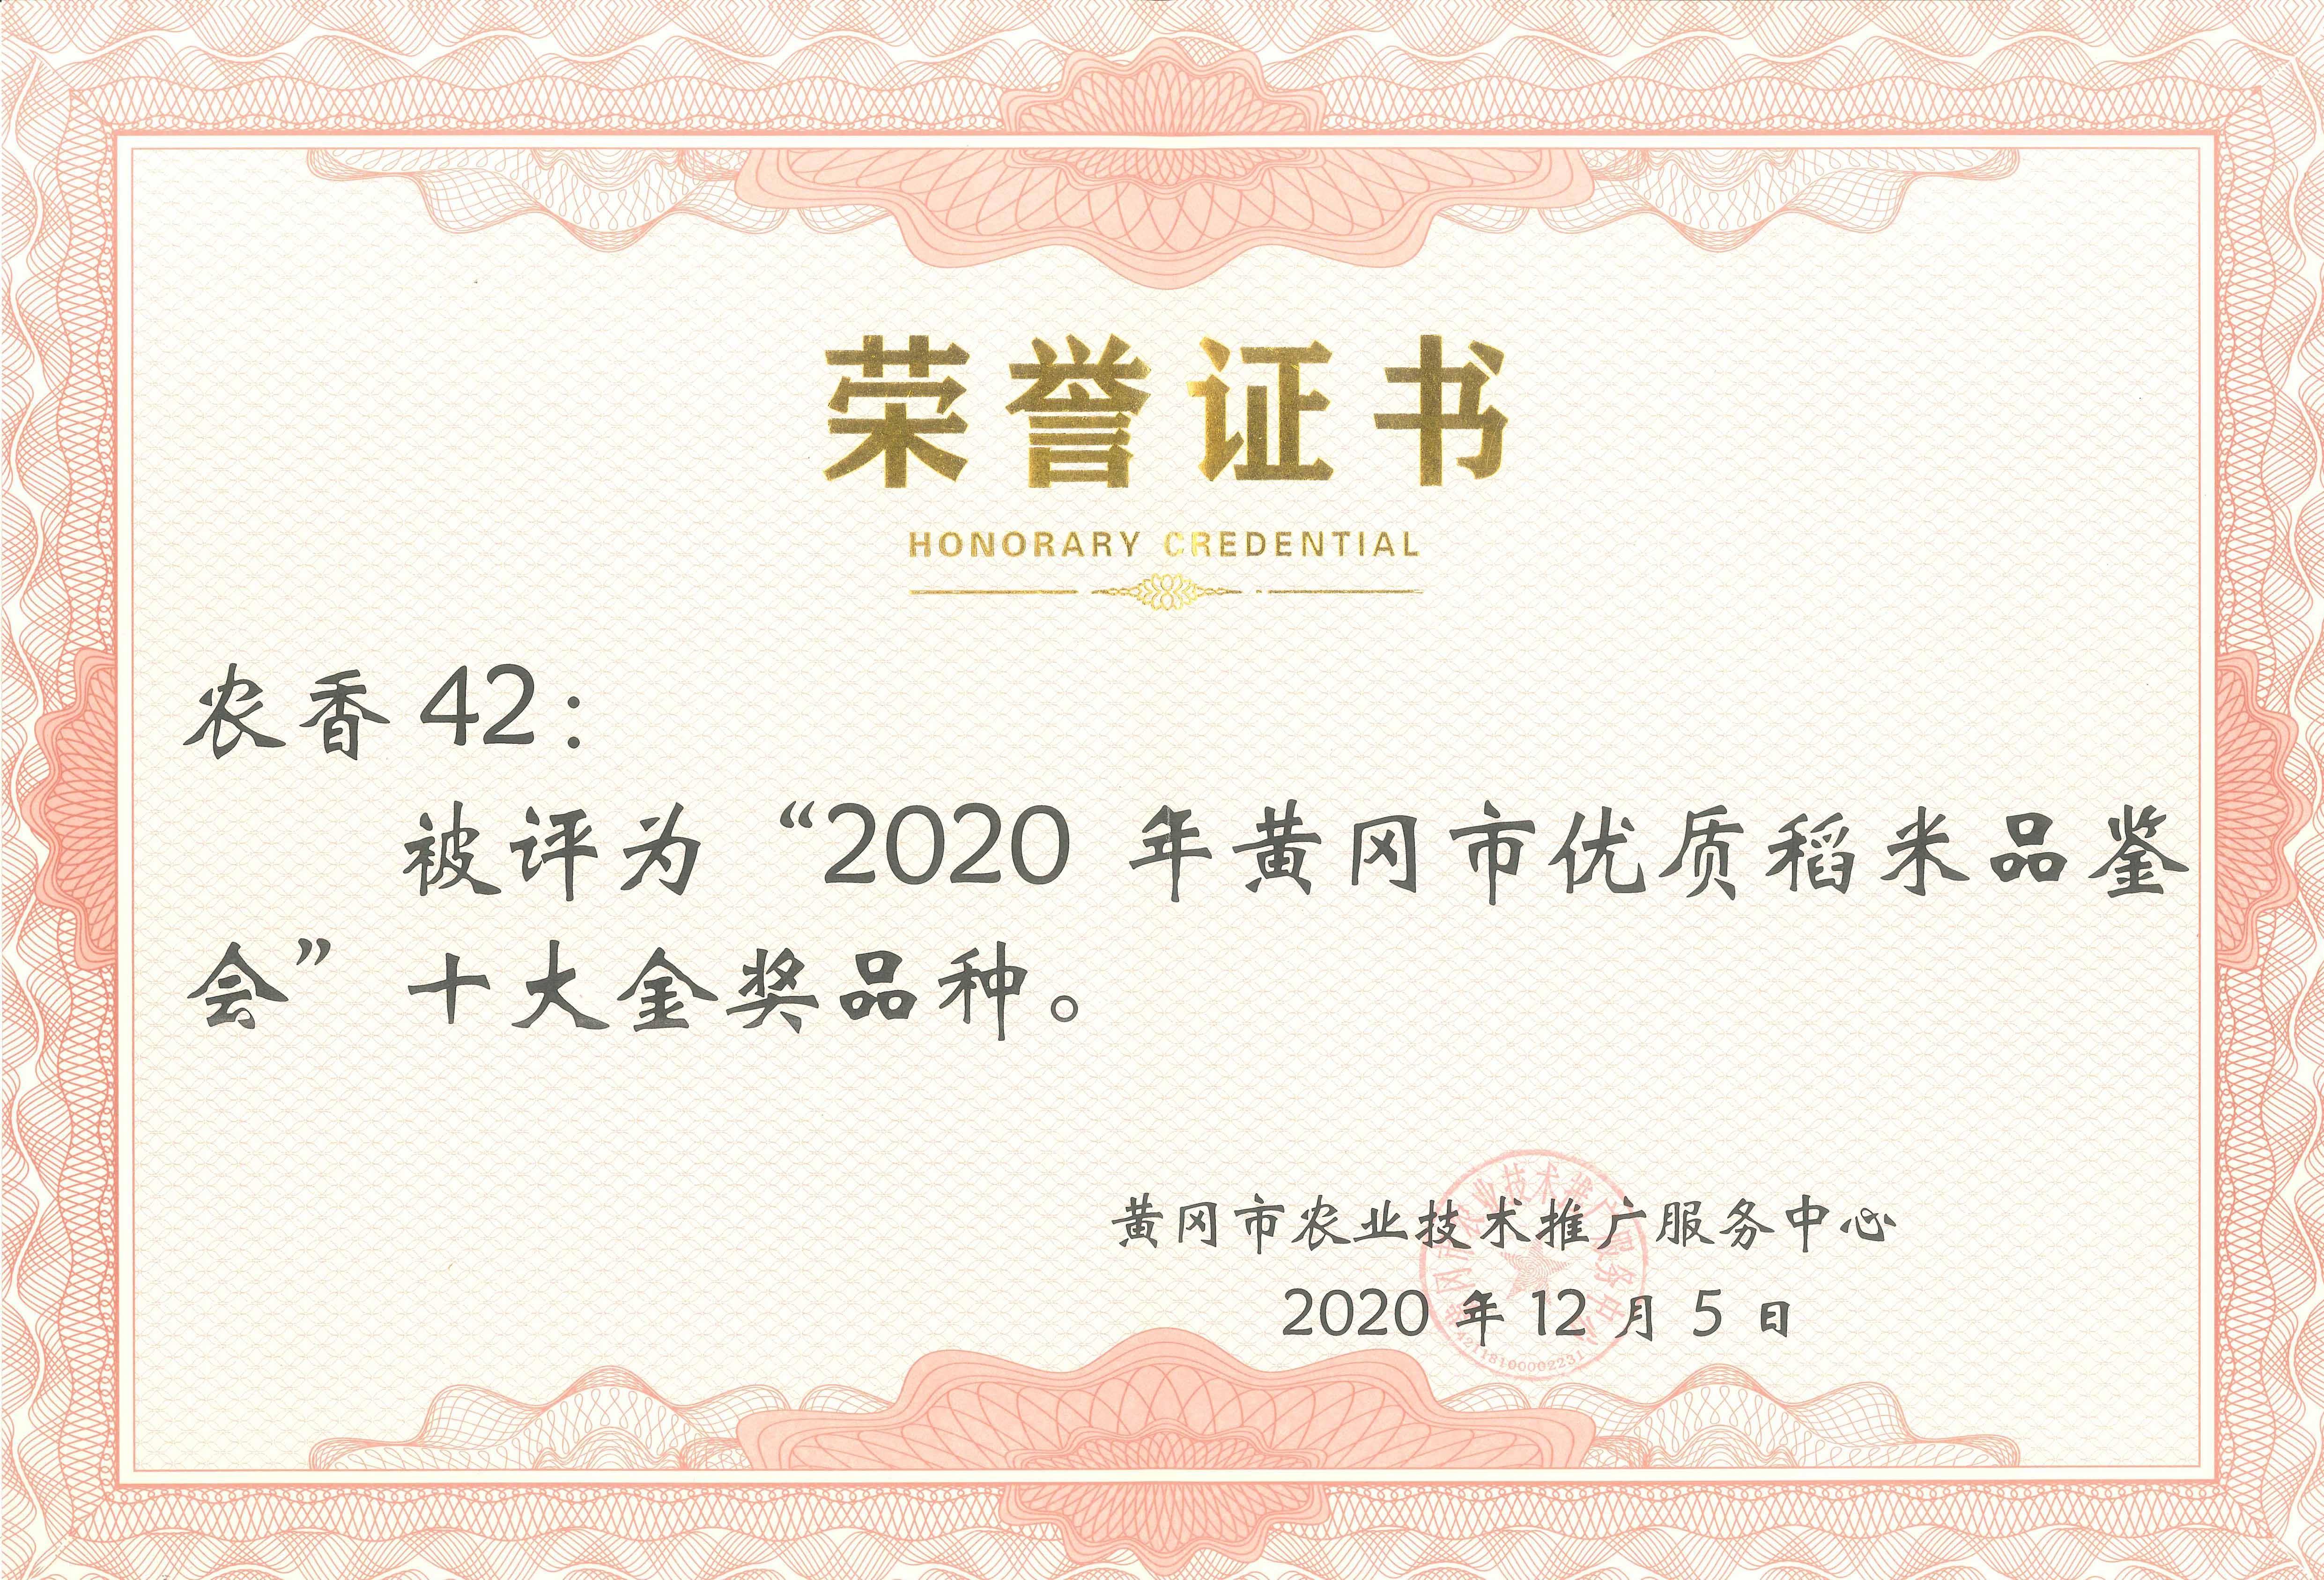 2020年黃(huáng)岡市(shì)優質稻米鑒評會金(jīn)獎品種